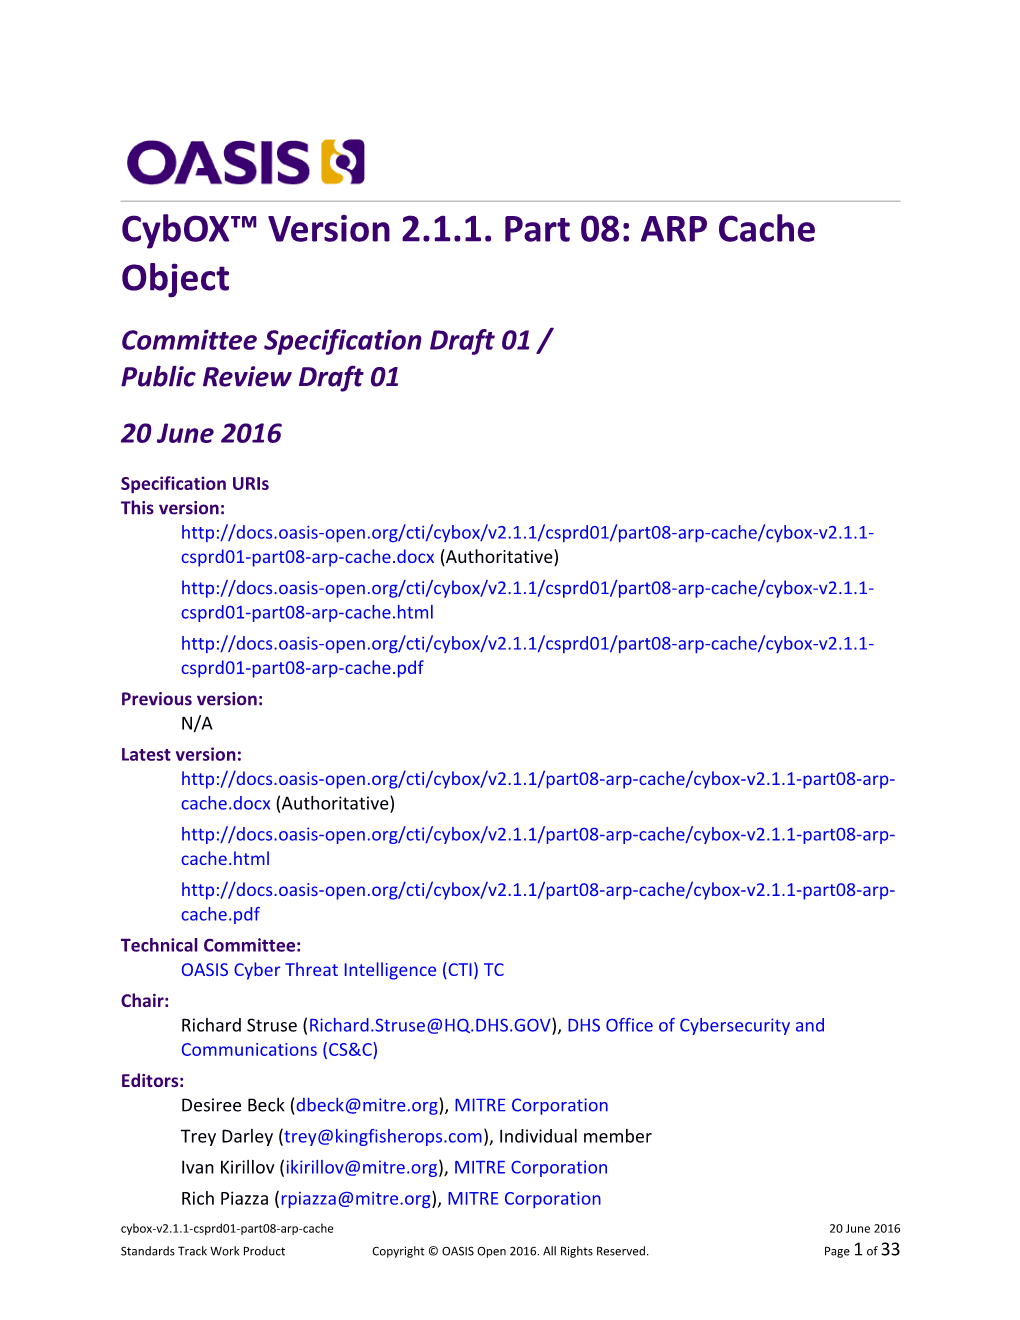 Cyboxtm Version 2.1.1 Part 08: ARP Cache Object